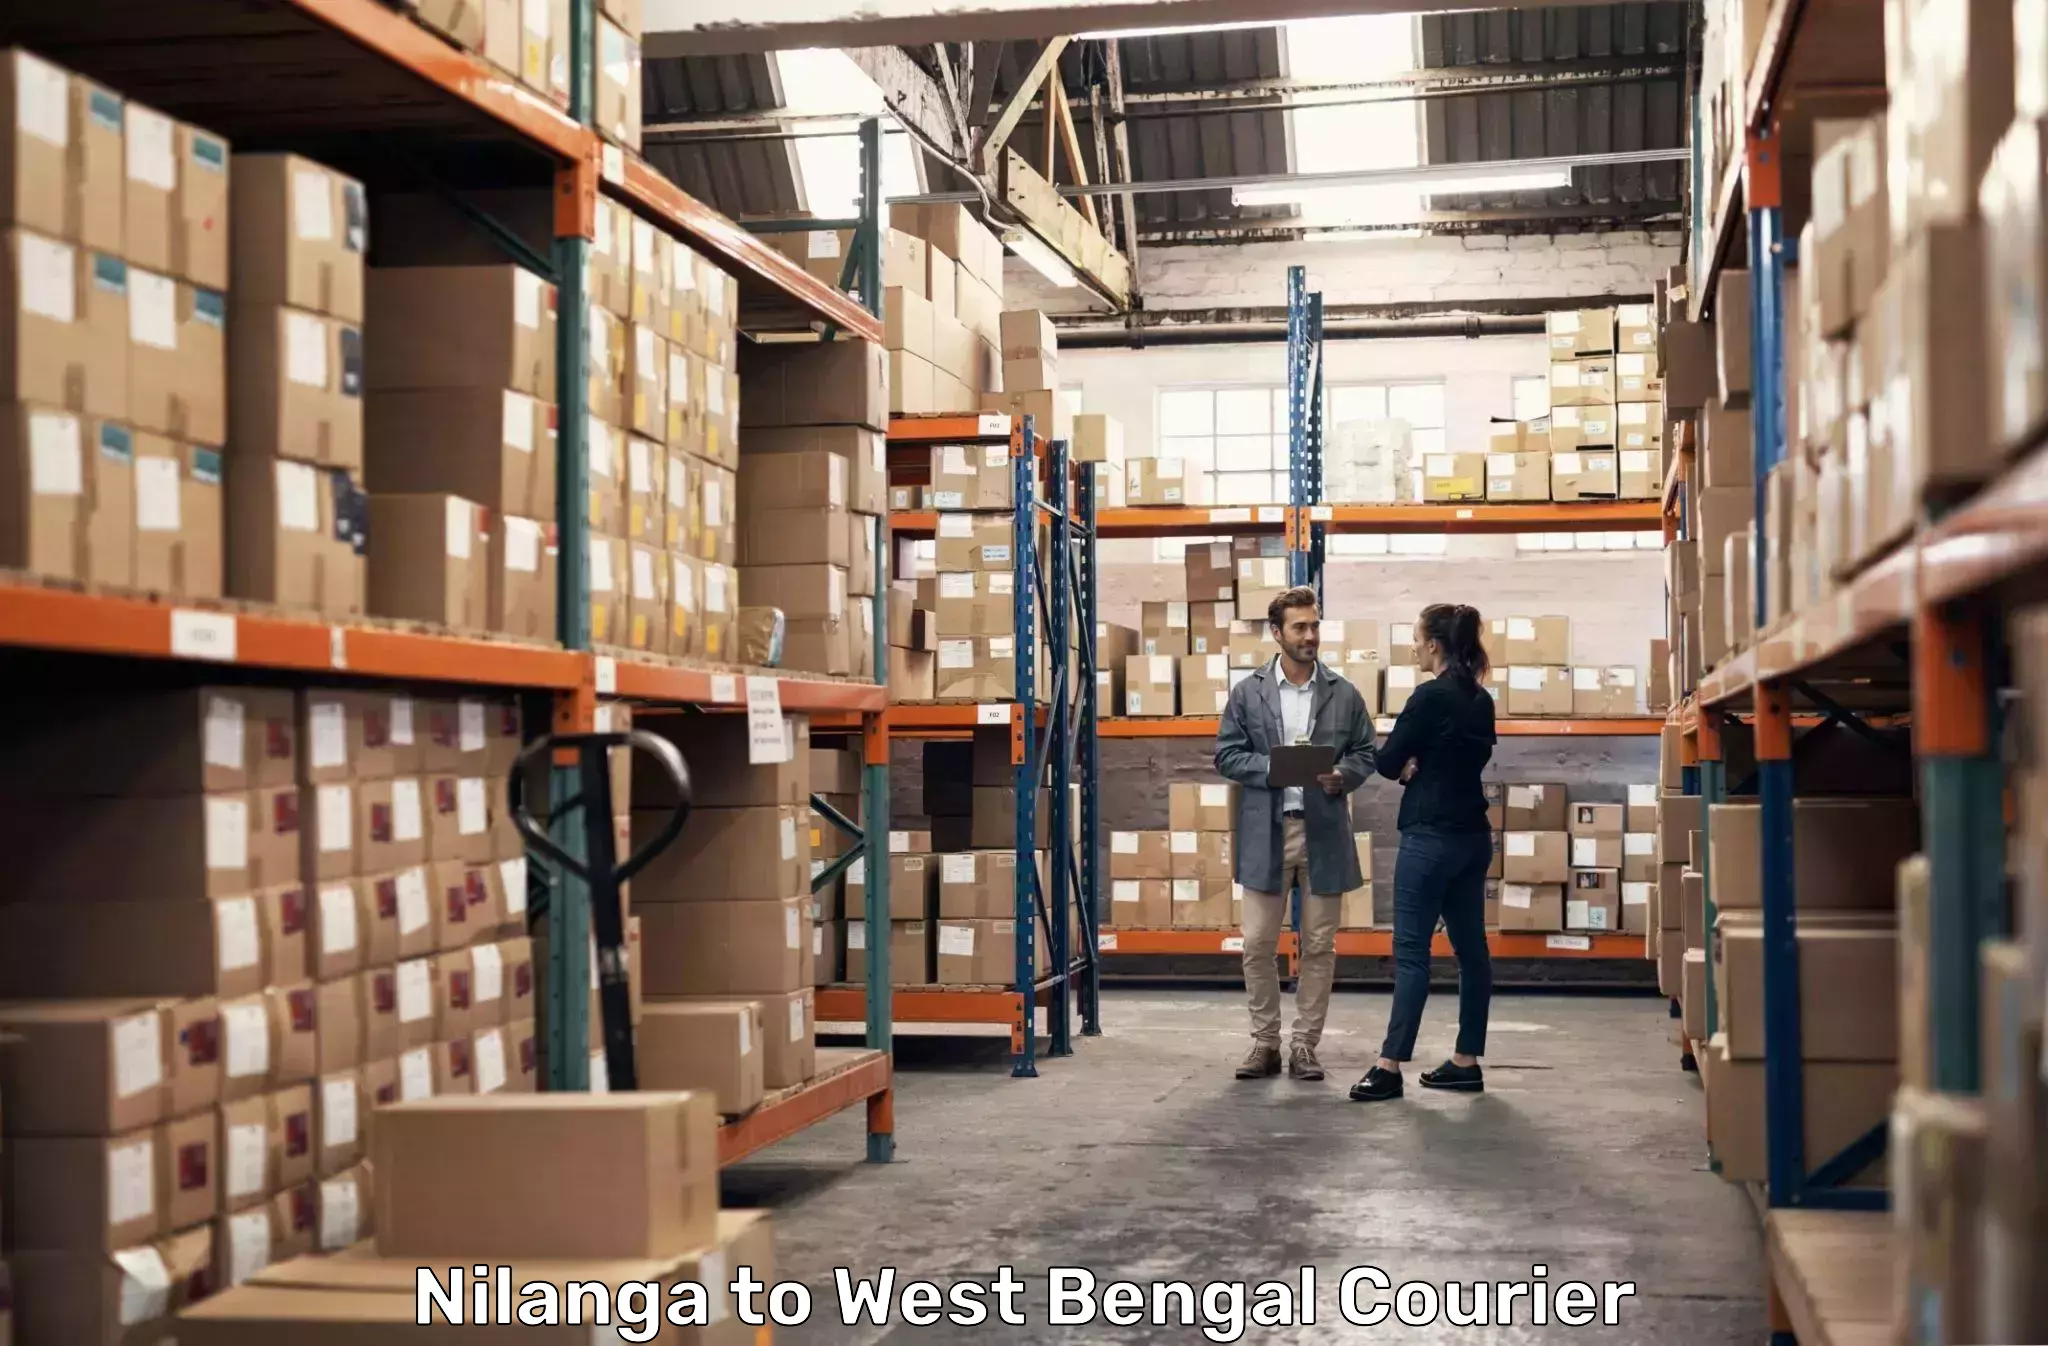 Regular parcel service Nilanga to IIIT Kalyani